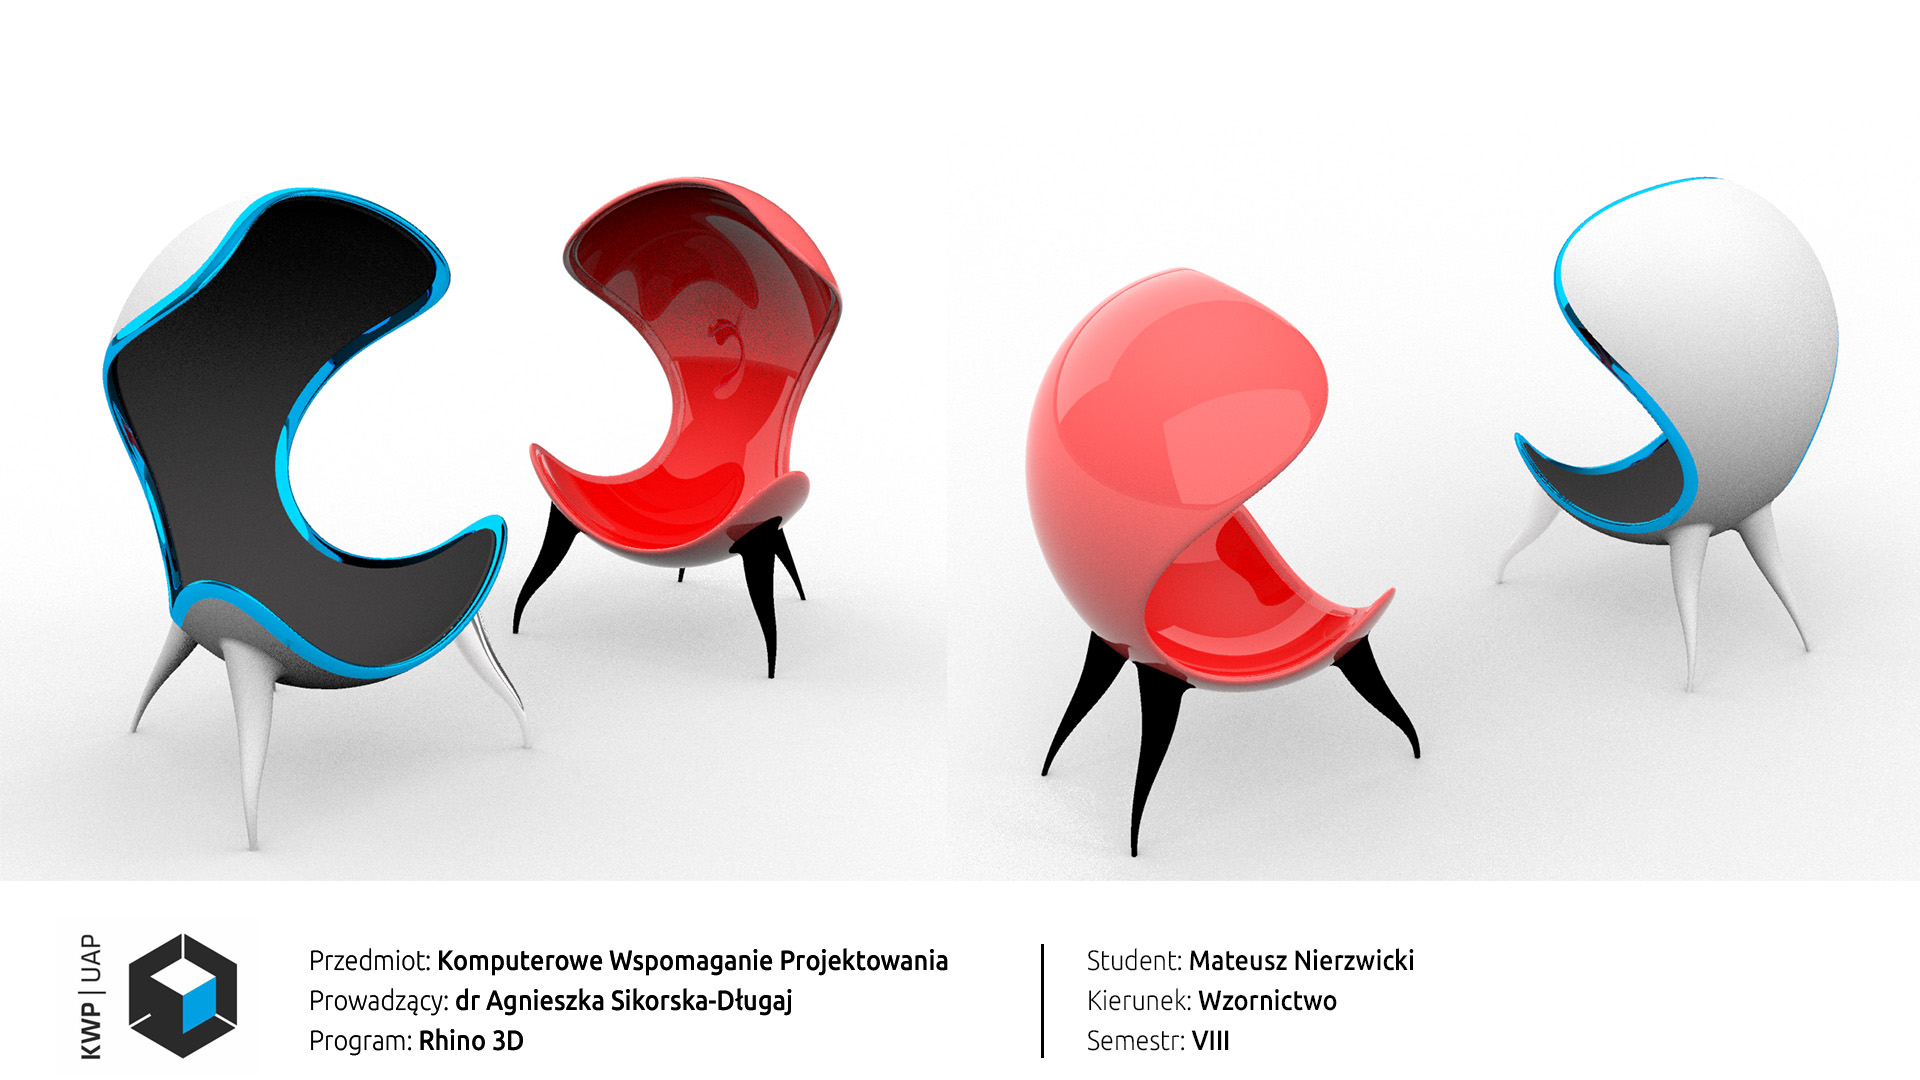 Rendery z programu Rhino 3D. Model fotela Egg chair w dwóch wersjach kolorystycznych: niebiesko-czarno-białej i czerwonej-czarnej. Tło białe.